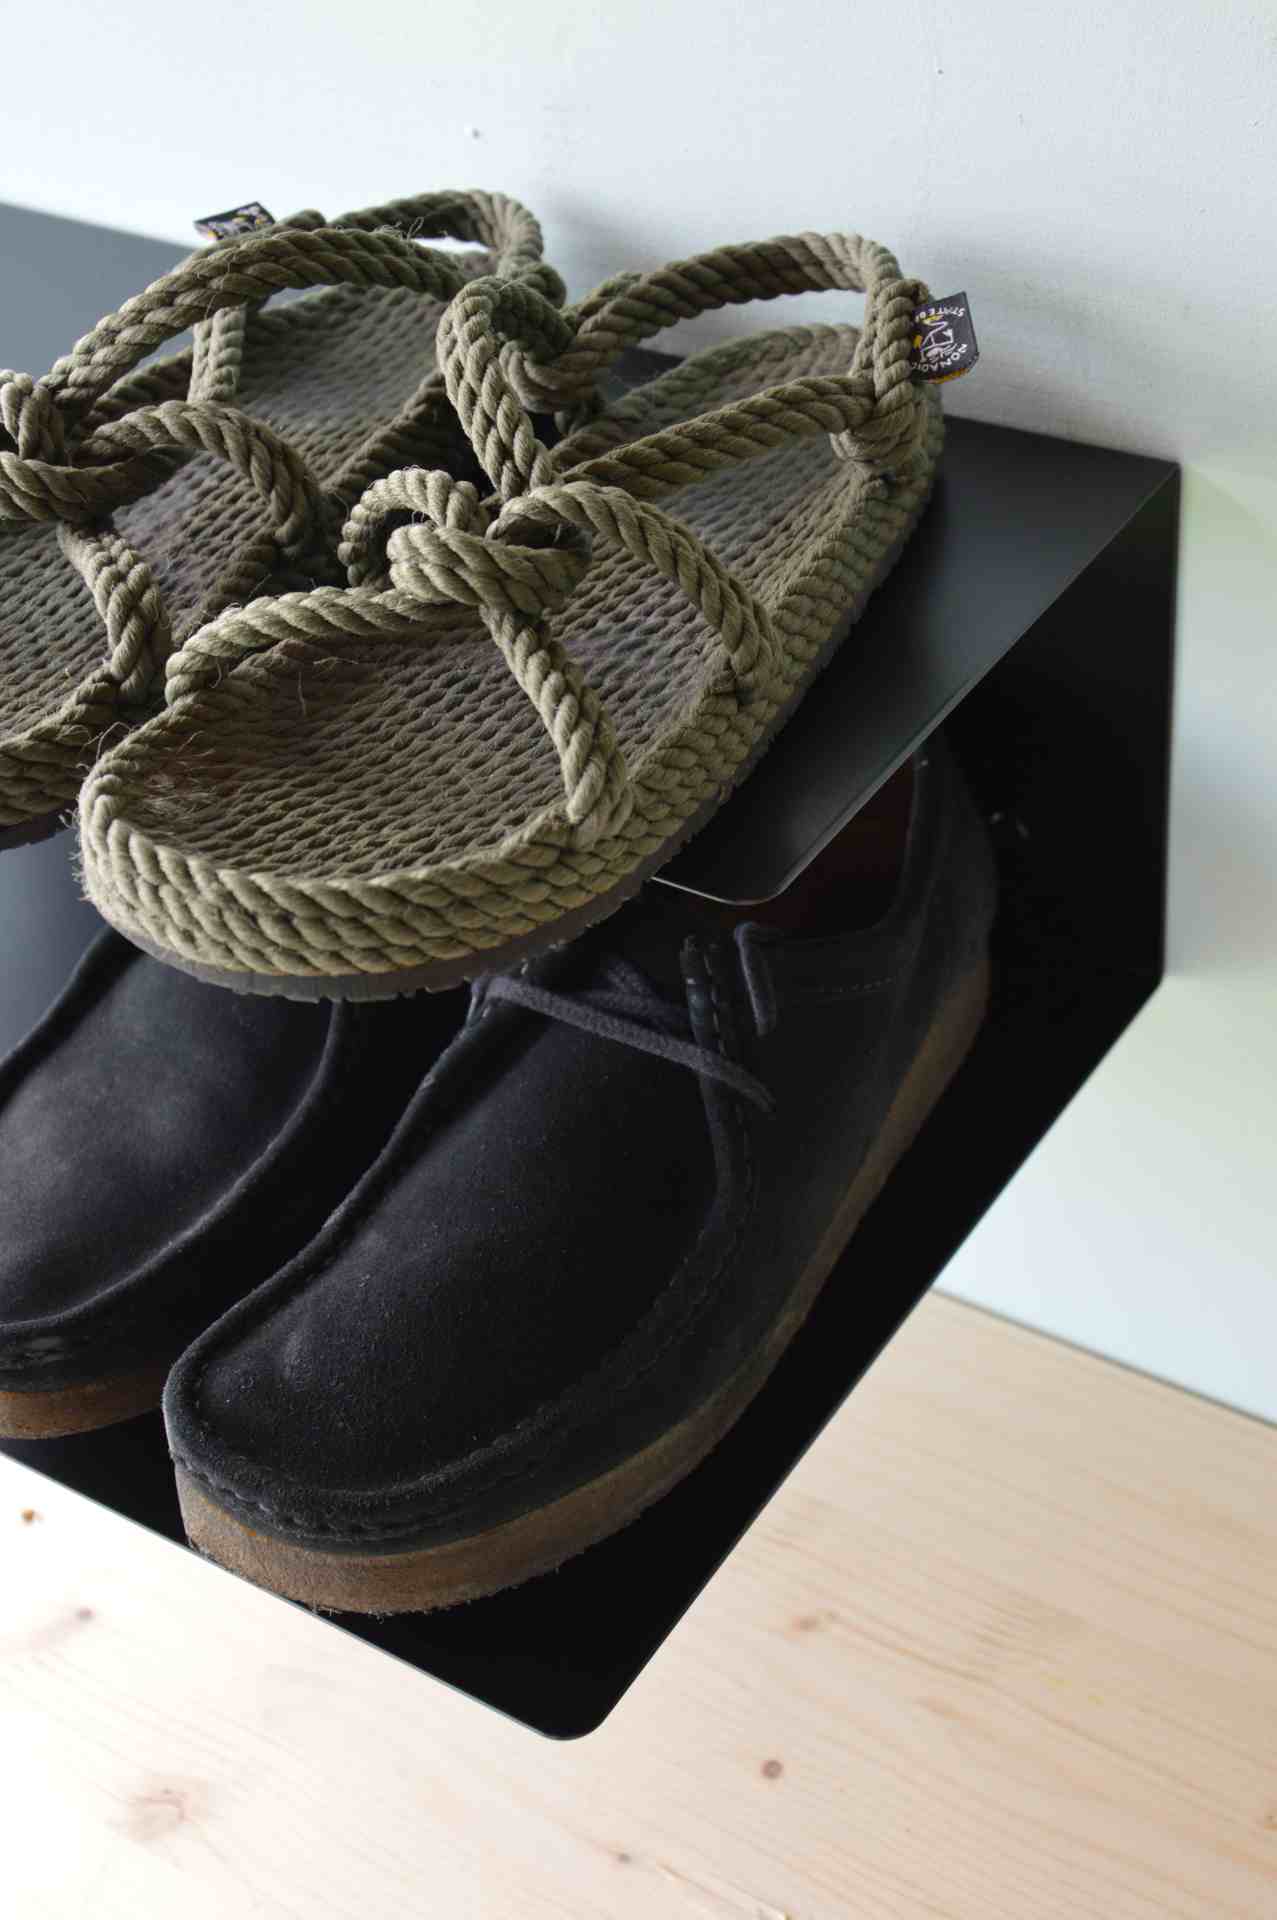 Das Schuhregal Fritz wurde aus Metall gefertigt und hat einen schwarzen Farbton. Die Breite beträgt 80 cm. Das Design ist schlicht aber auch modern. Das Regal ist ein Produkt der Marke Jan Kurtz.